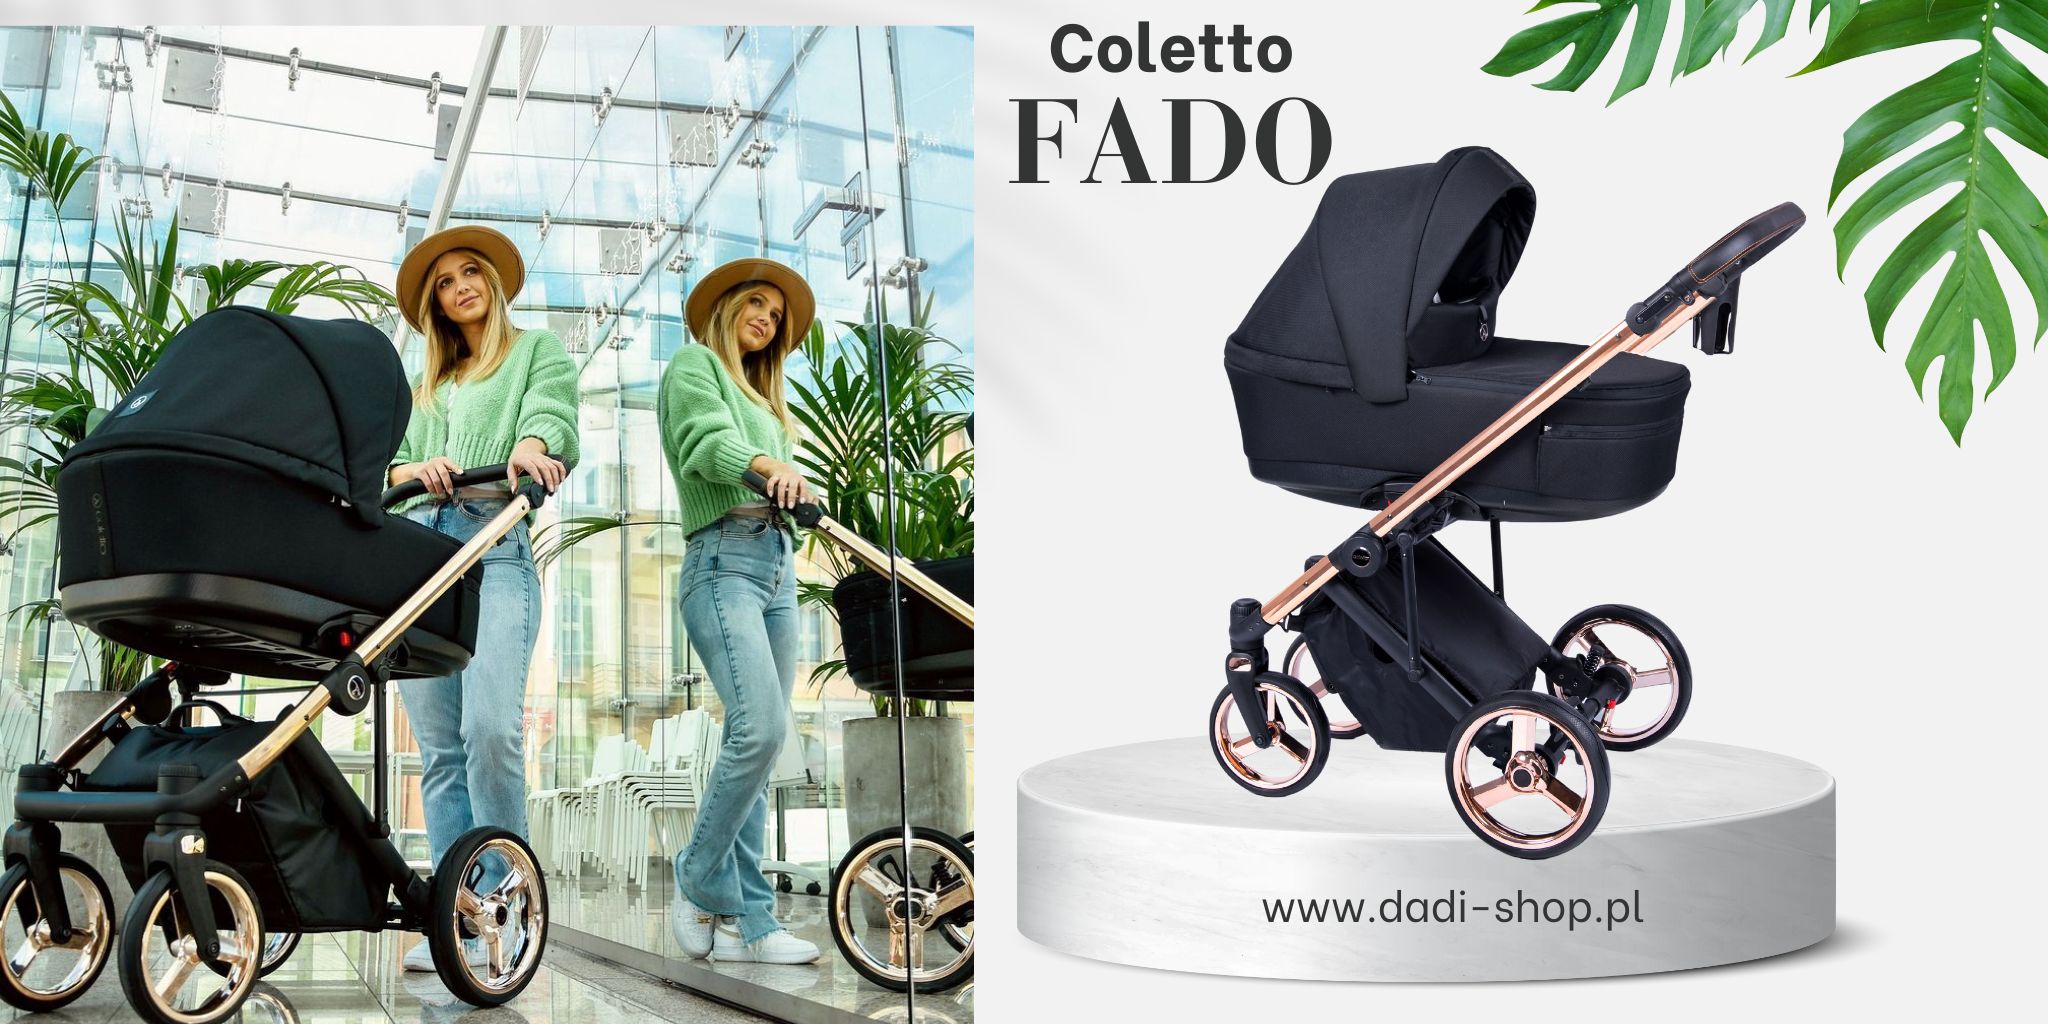 Coletto Fado wozek dzieciecy 2w1 3 w 1 Fa 10 Wielofunkcyjny nowoczesny sklep dadi-shop